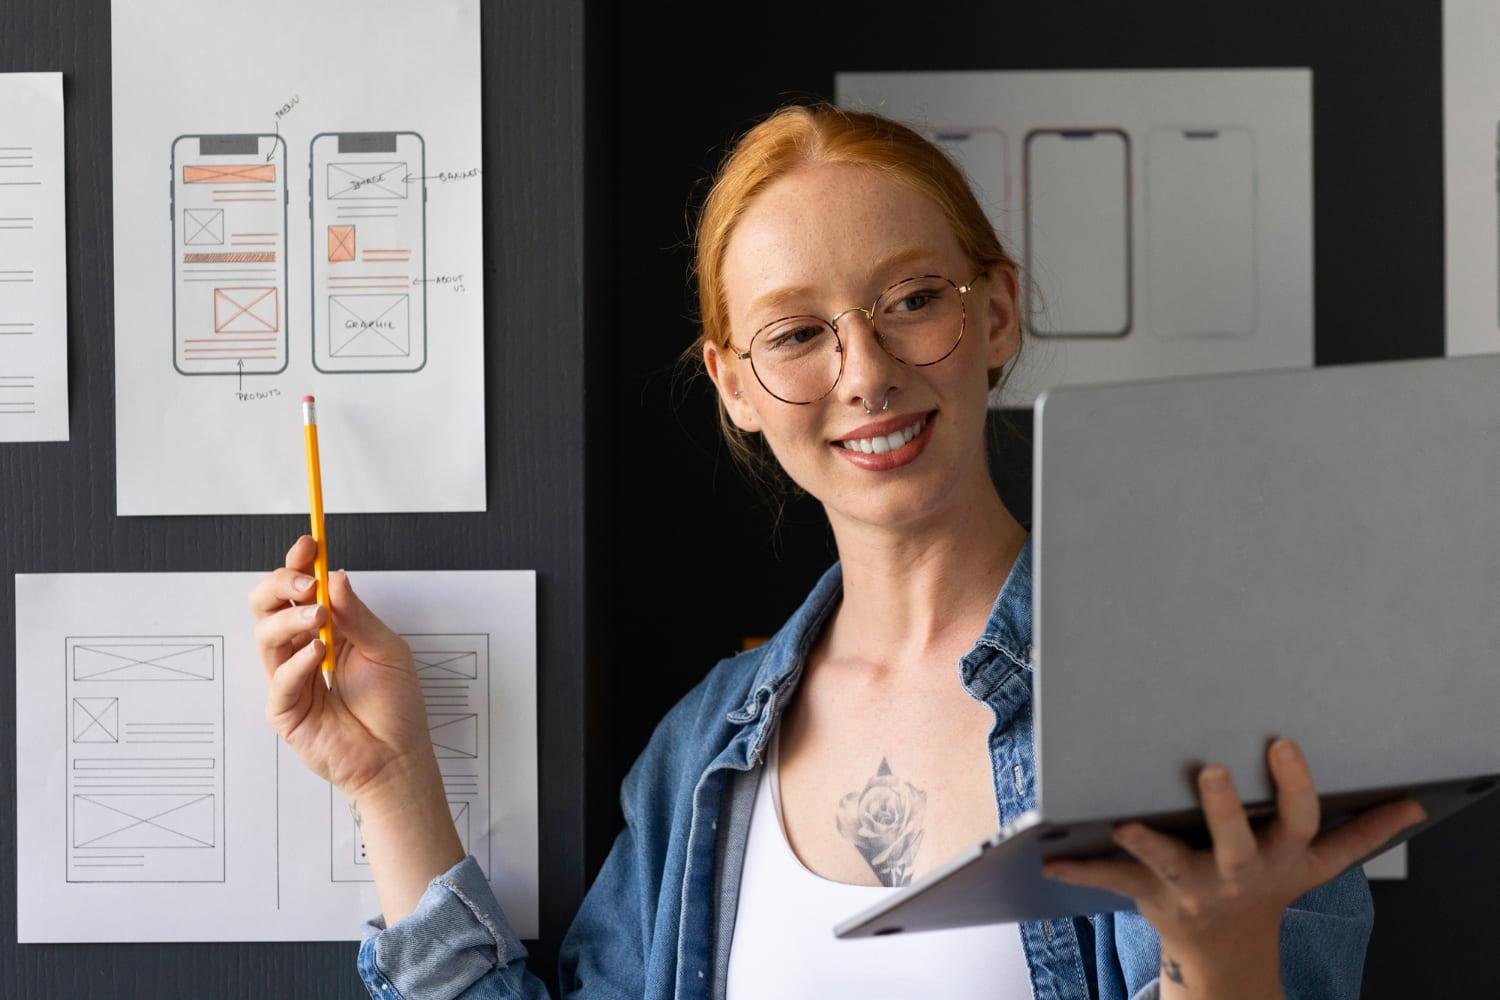 Mulher branca com laptop na mão esquerda, apontando para quadro com lápis na mão direita